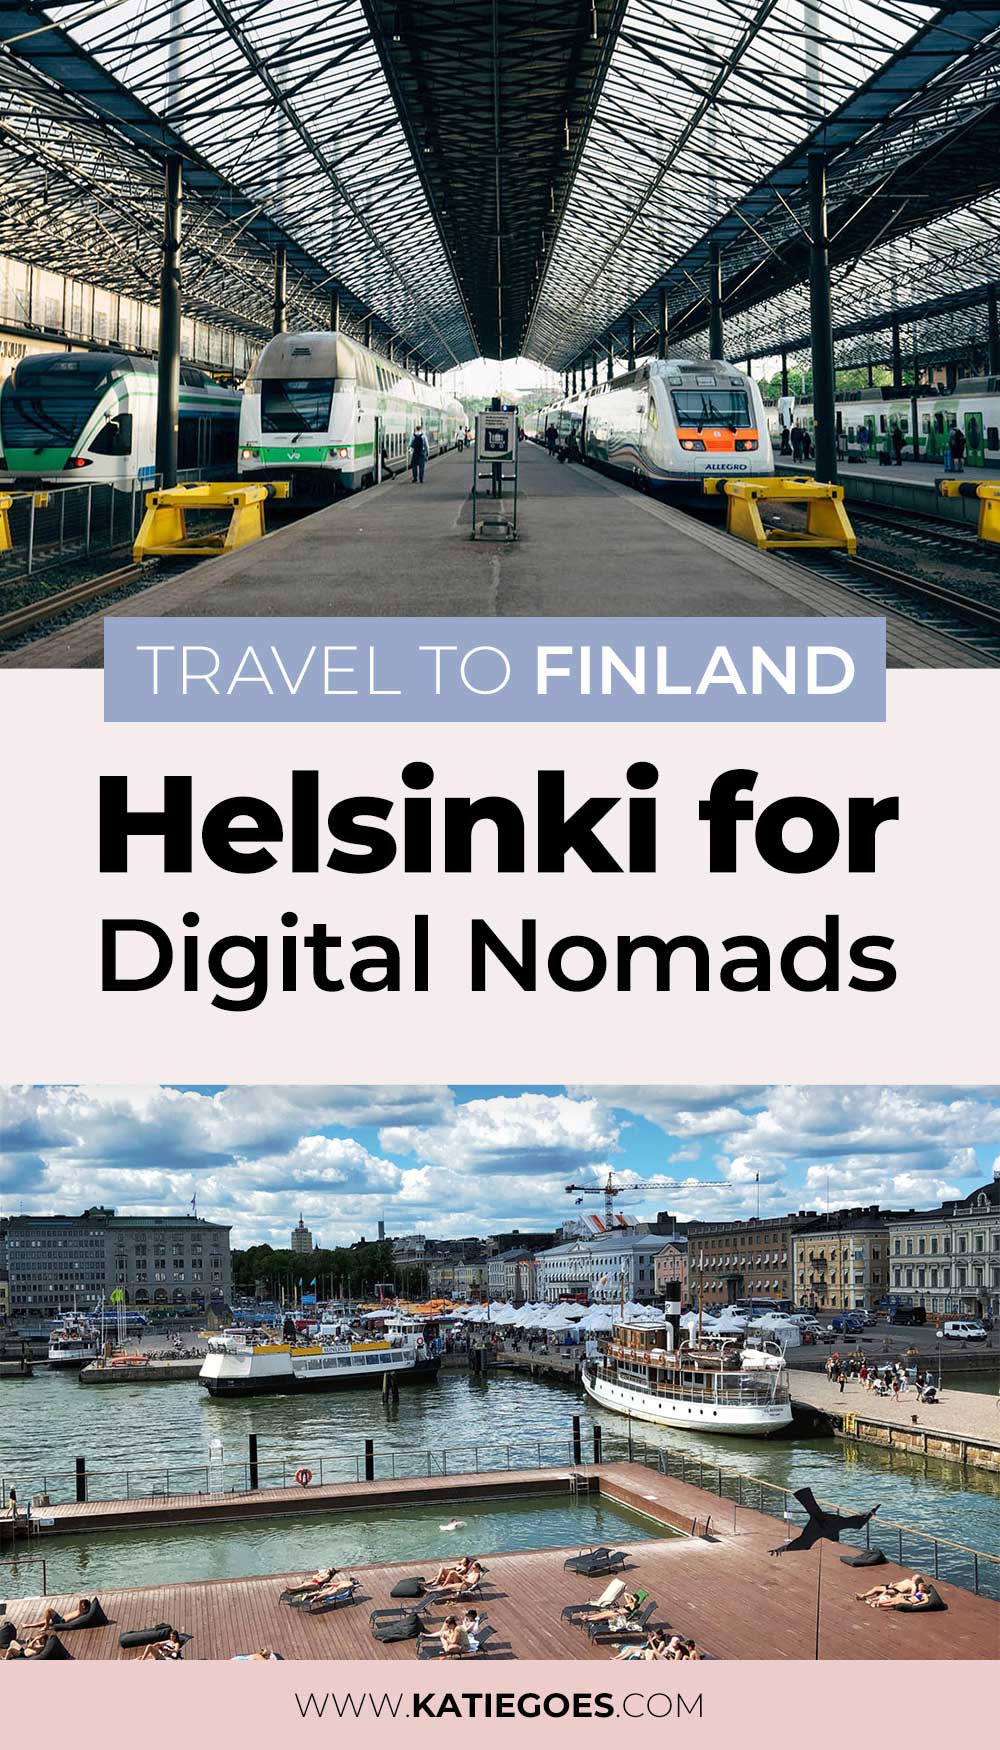 Helsinki for Digital Nomads: Travel to Finland